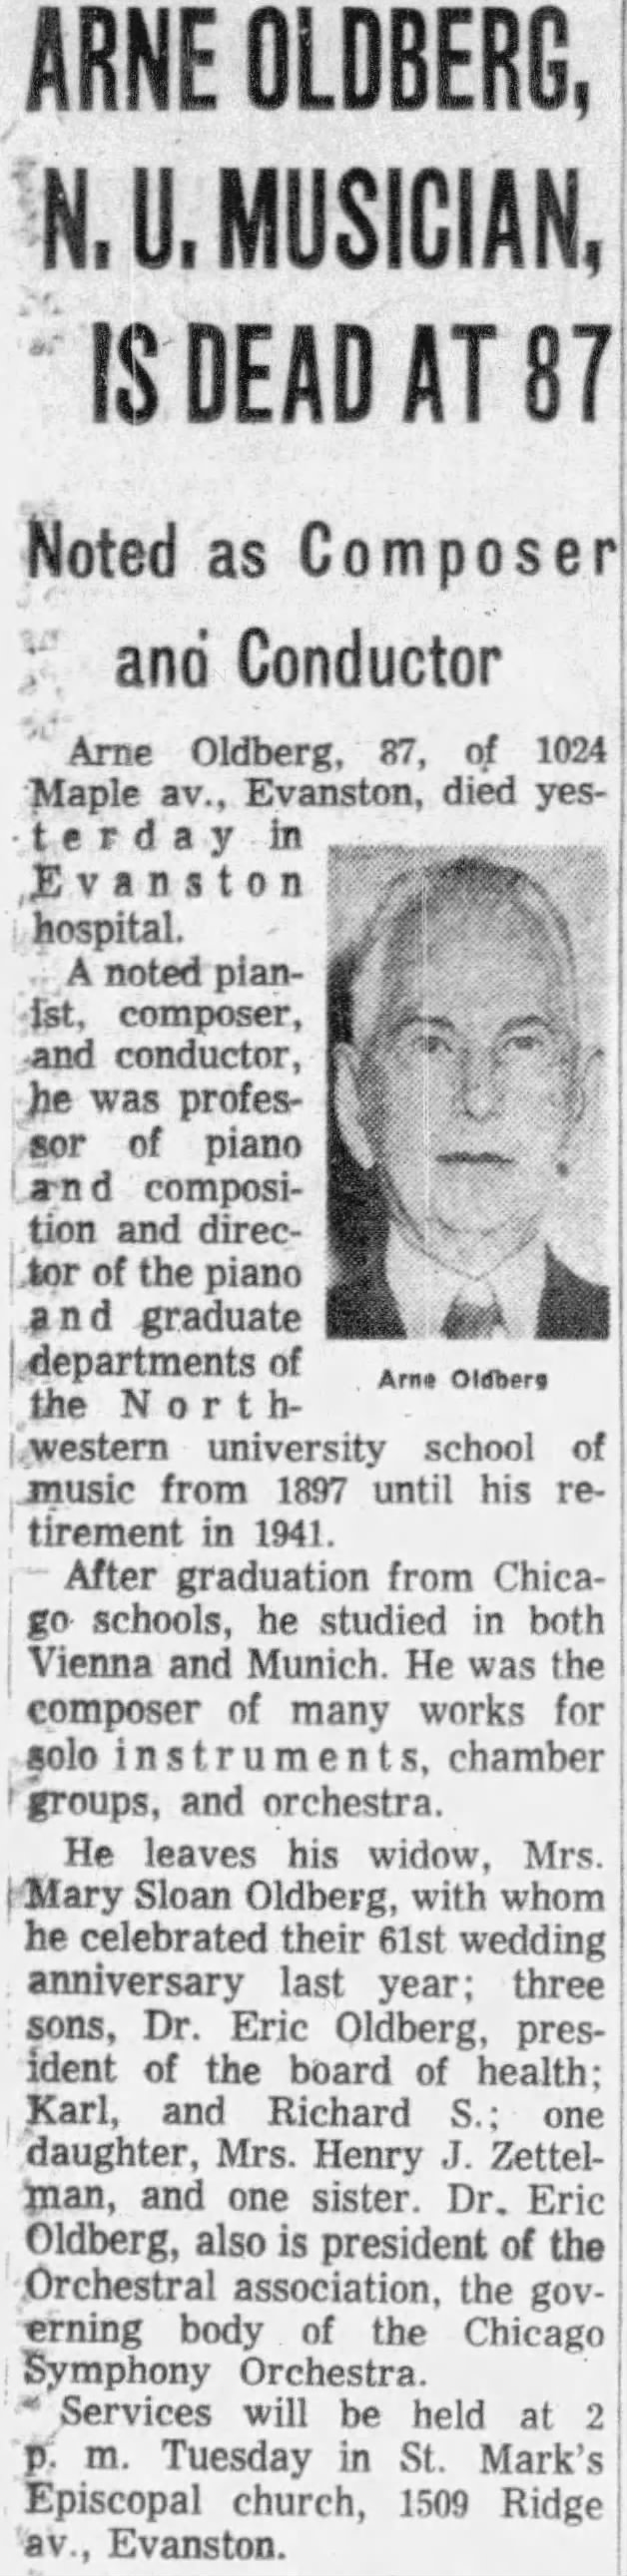 Arne Oldberg, N.U. Musician, is Dead at 87